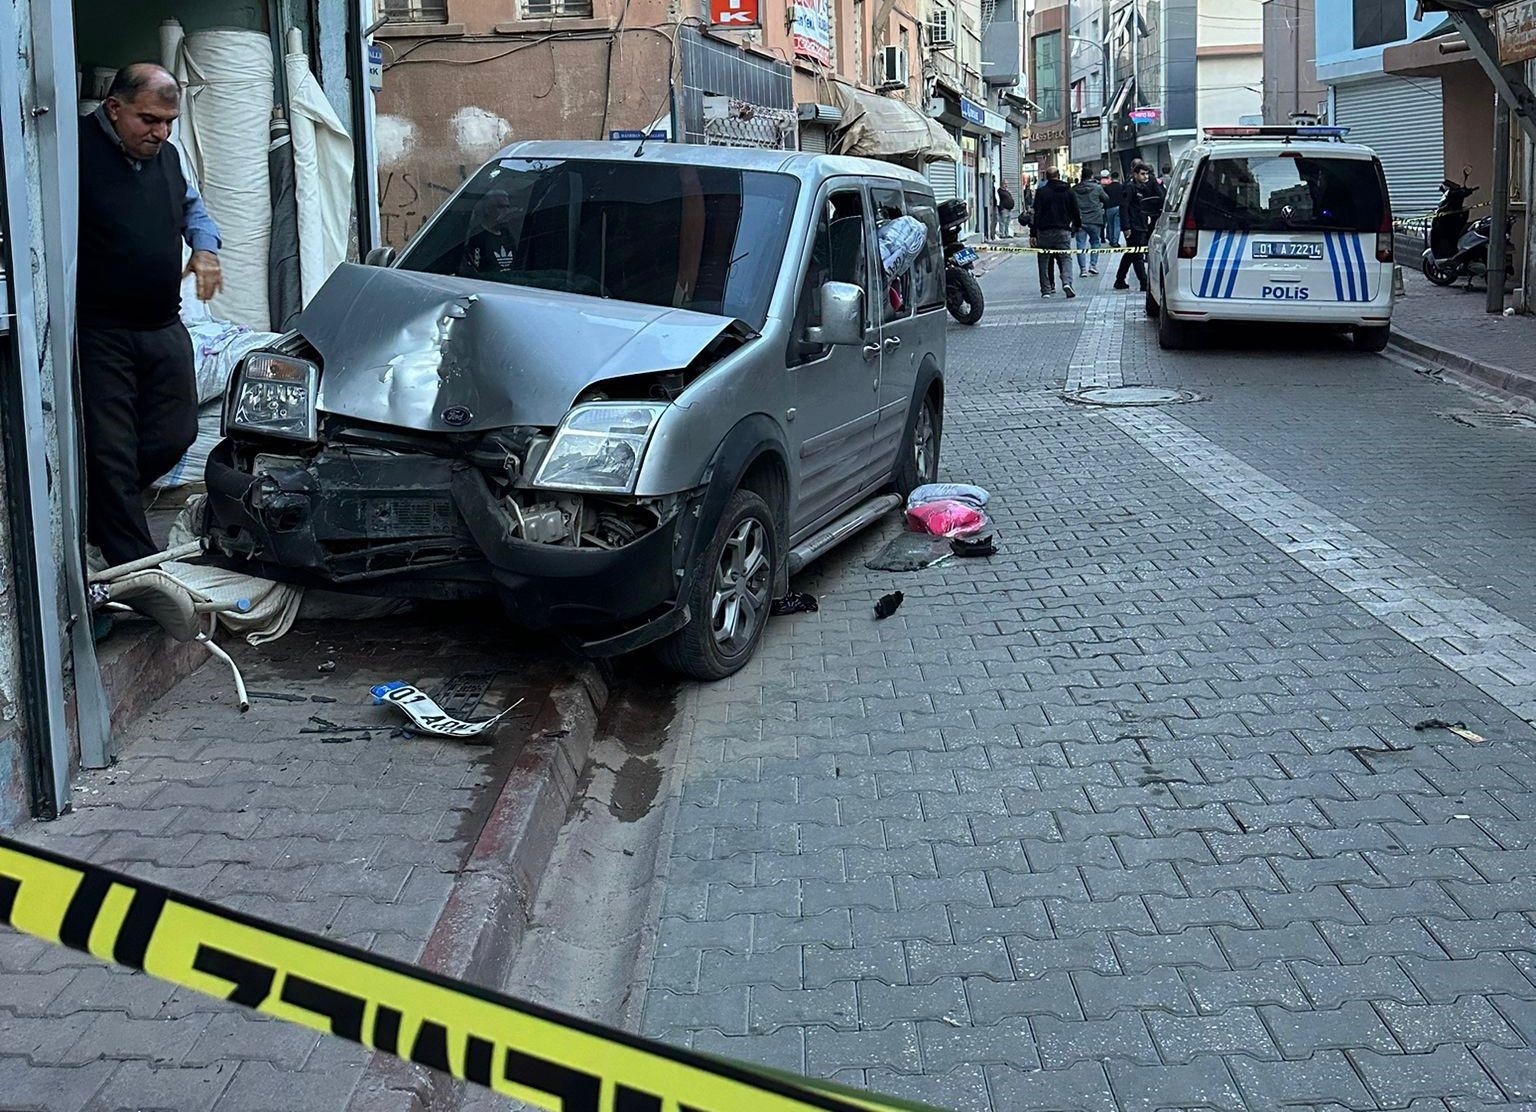 Adana'da sokak ortasında infaz!